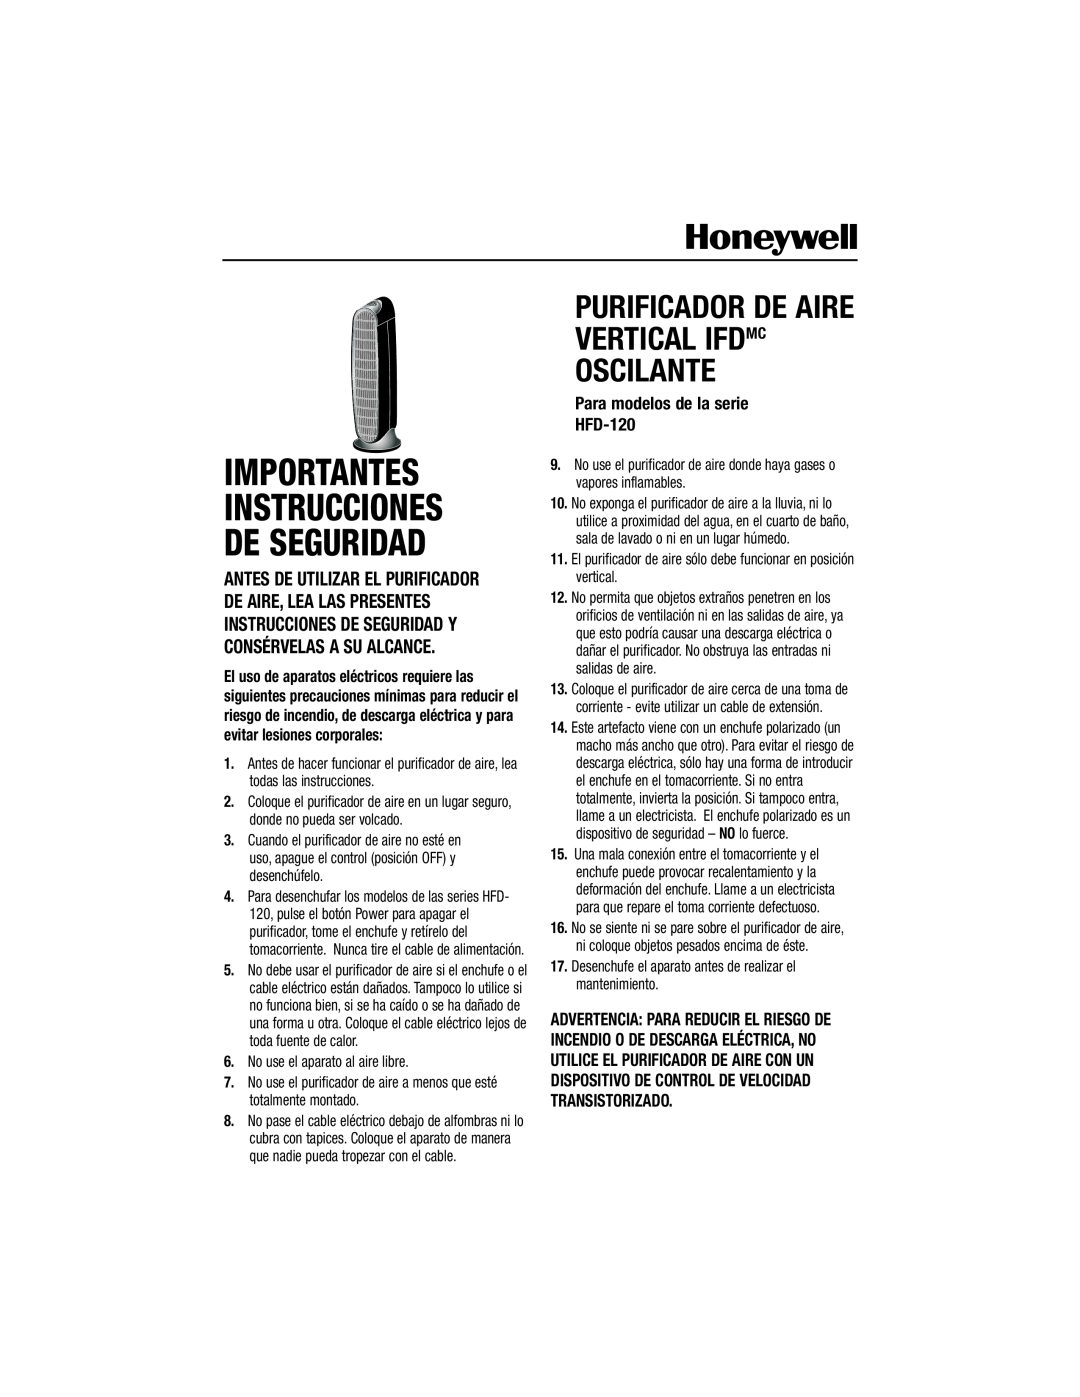 Honeywell HFD-120 Importantes Instrucciones De Seguridad, Purificador De Aire Vertical Ifdmc Oscilante 